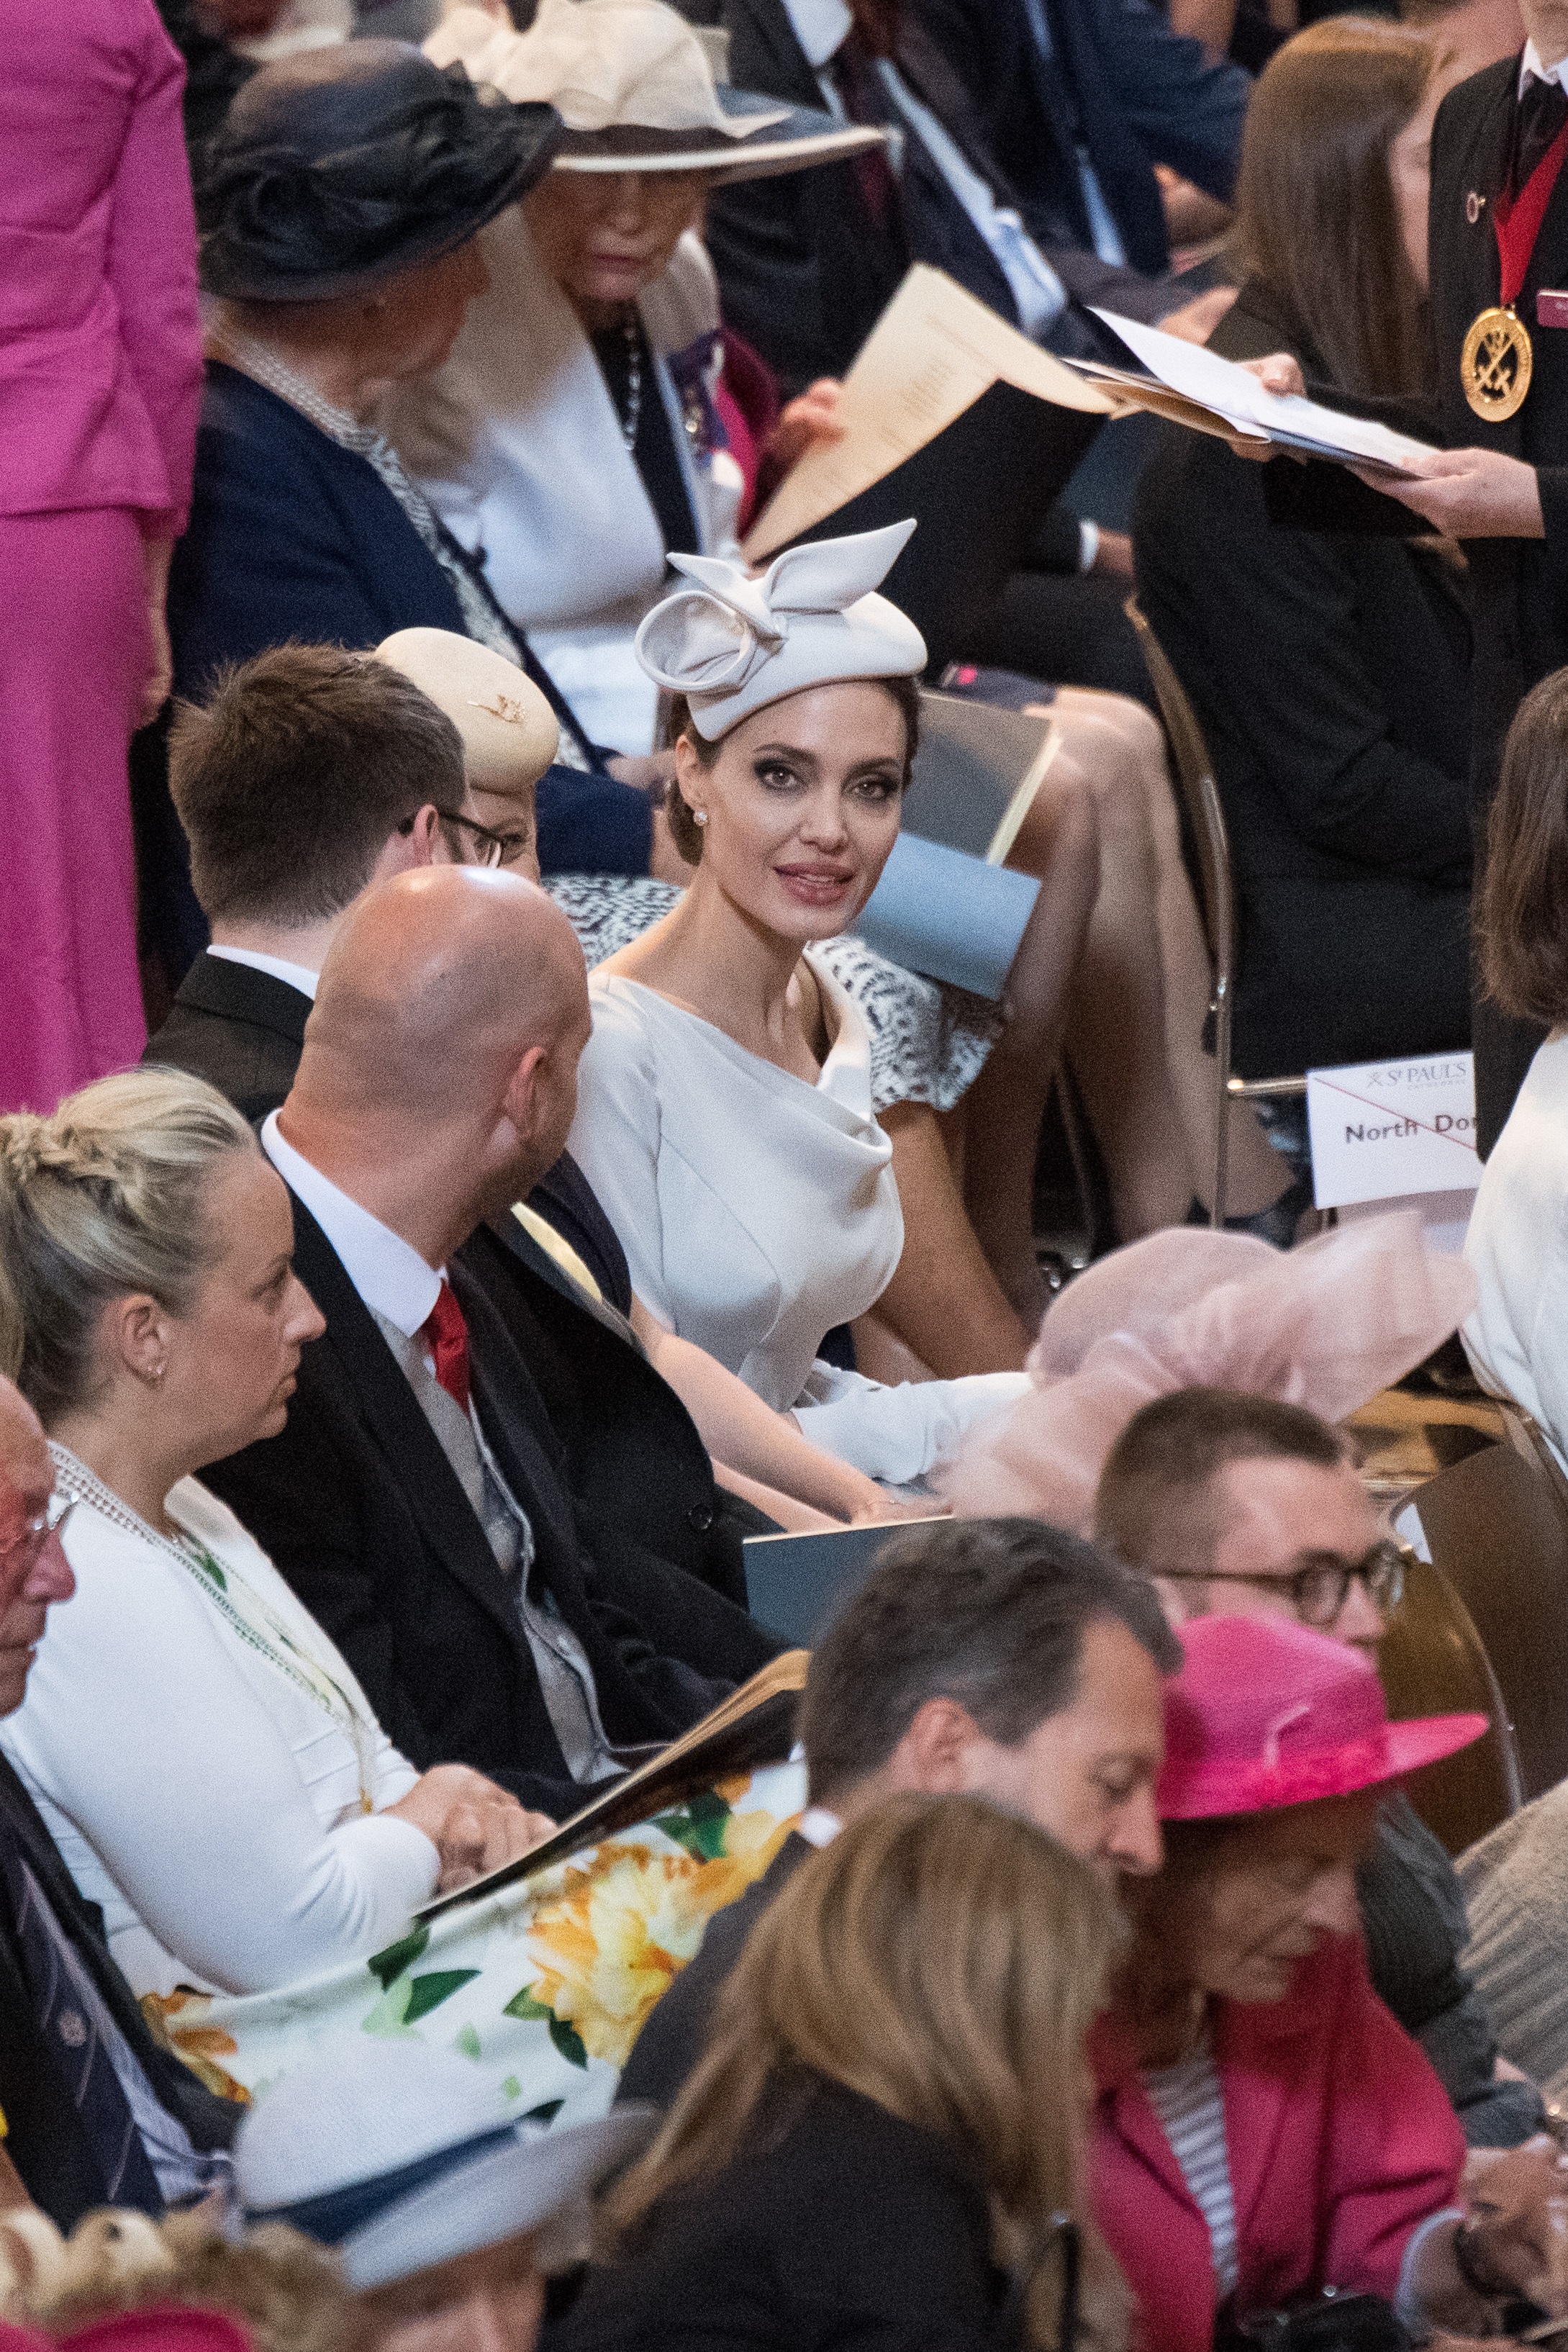 Анджелина Джоли прикова погледите към себе си в катедралата Сейнт Пол в Лондон на кралска церемония по повод 200 годишнината на най-важния орден – на Архангел Михаил и Сейнт Джордж